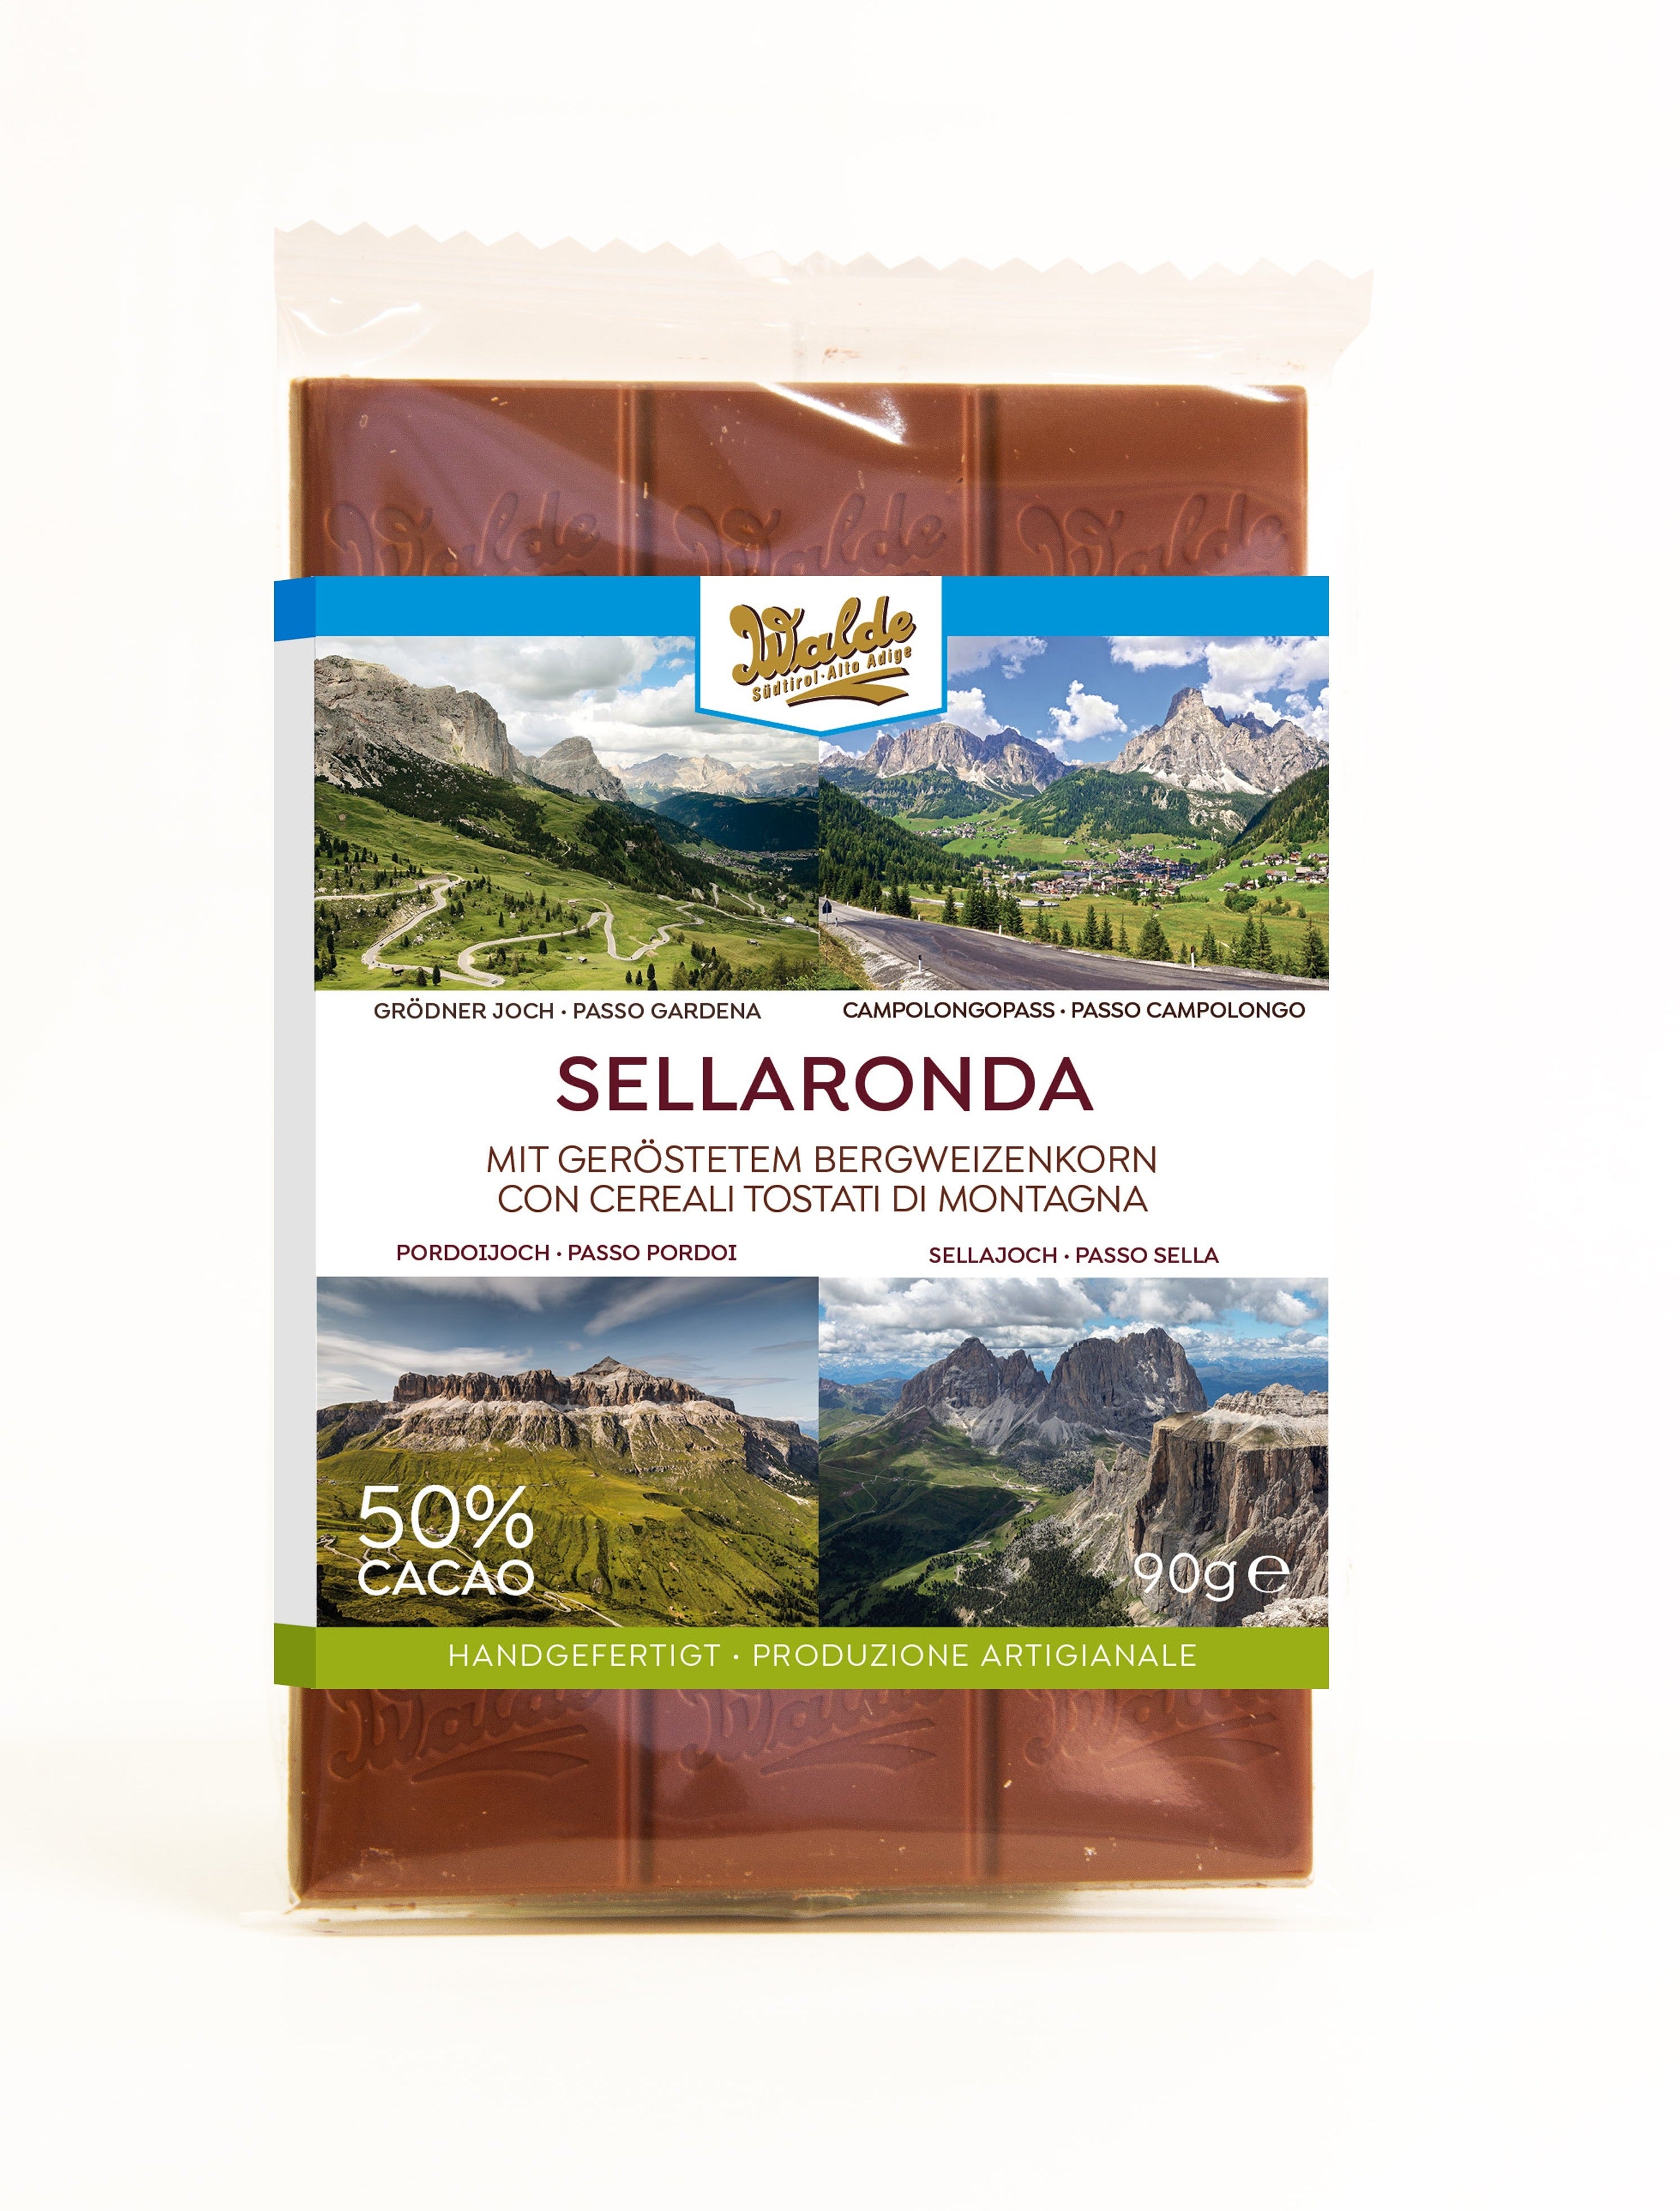 Sellaronda - Milchschokolade (50%) mit geröstetem Bergweizenkorn aus 1.000 m Meereshöhe